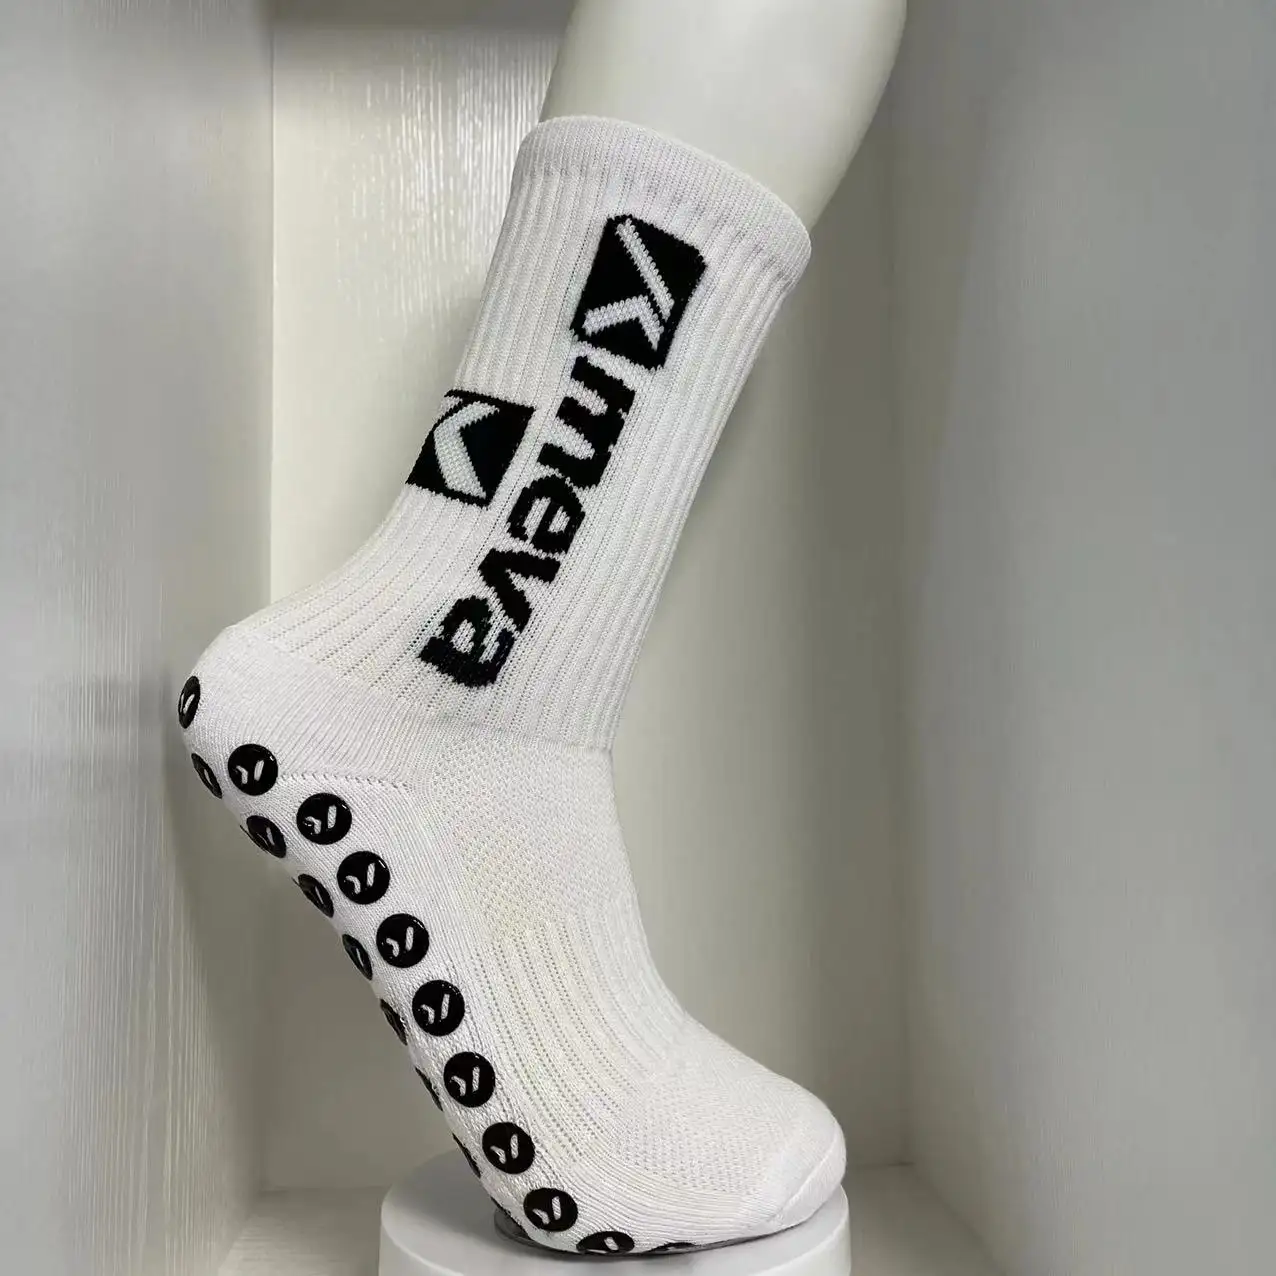 Profession elle rutsch feste Fußball-Socken Werkseitig eigenes LOGO-Design Fußball-Socken mit individuellem Griff und kunden spezifischen Etiketten-Tags Verpackung